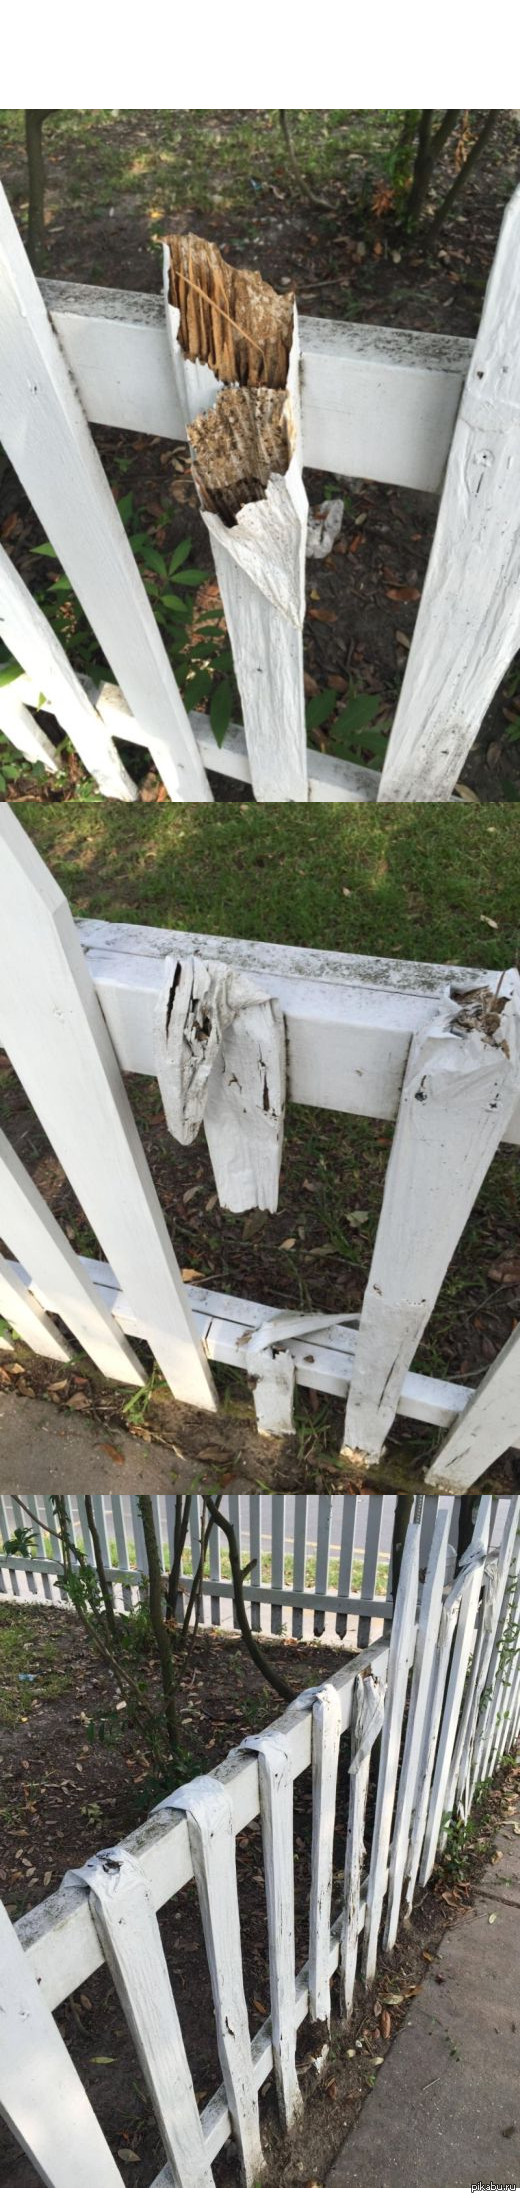 Термиты съели забор, оставив лишь слой не съедобной для них краски. 